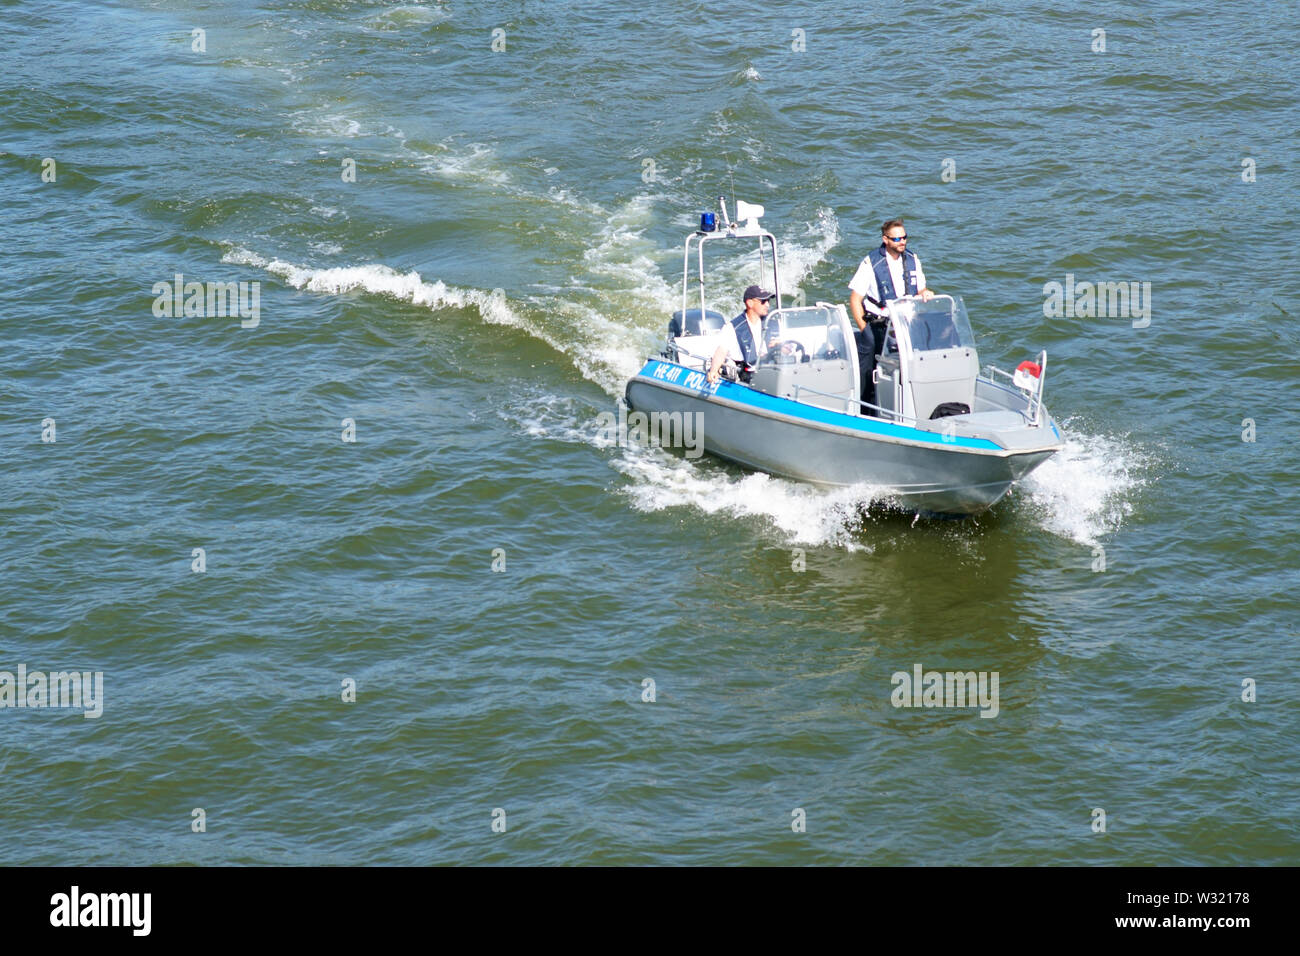 Francfort, Allemagne - Juillet 06, 2019 : La vue d'un bateau de police en patrouille sur la rivière Main sur Juillet 06, 2019 à Francfort. Banque D'Images